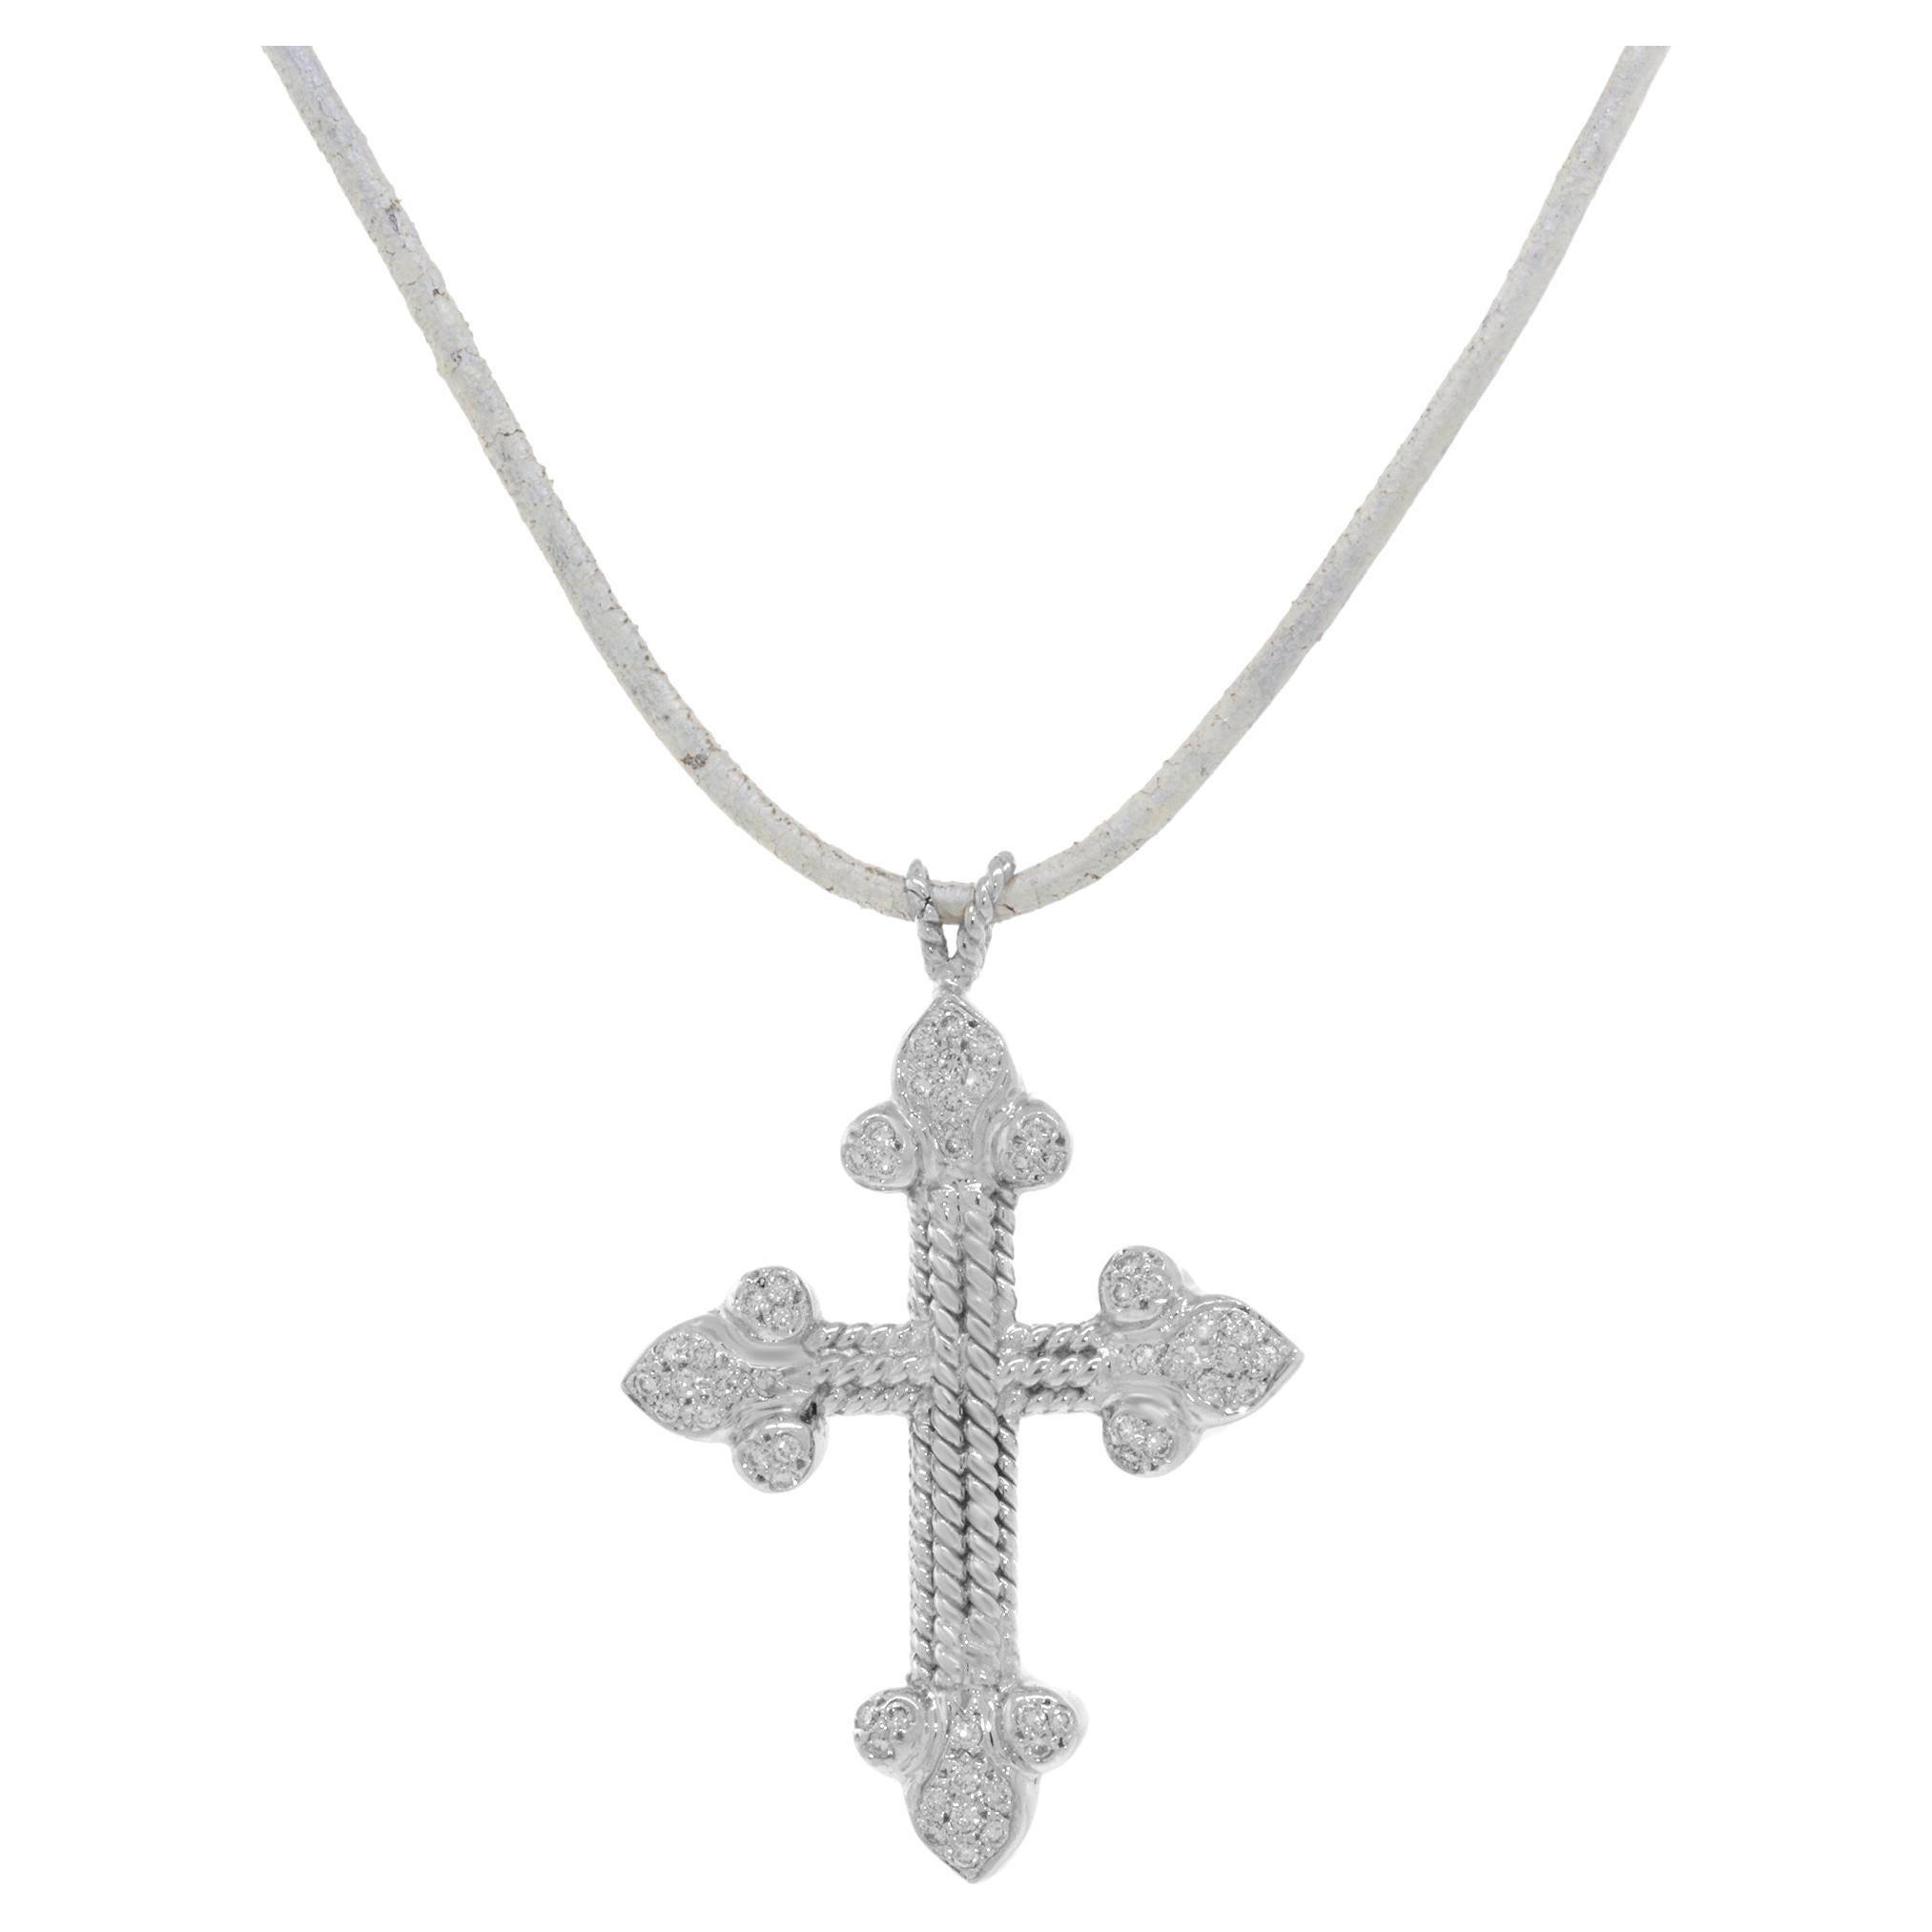 Rachel Koen, collier pendentif croix pour femme en or blanc 18 carats avec diamants 0,22 carat